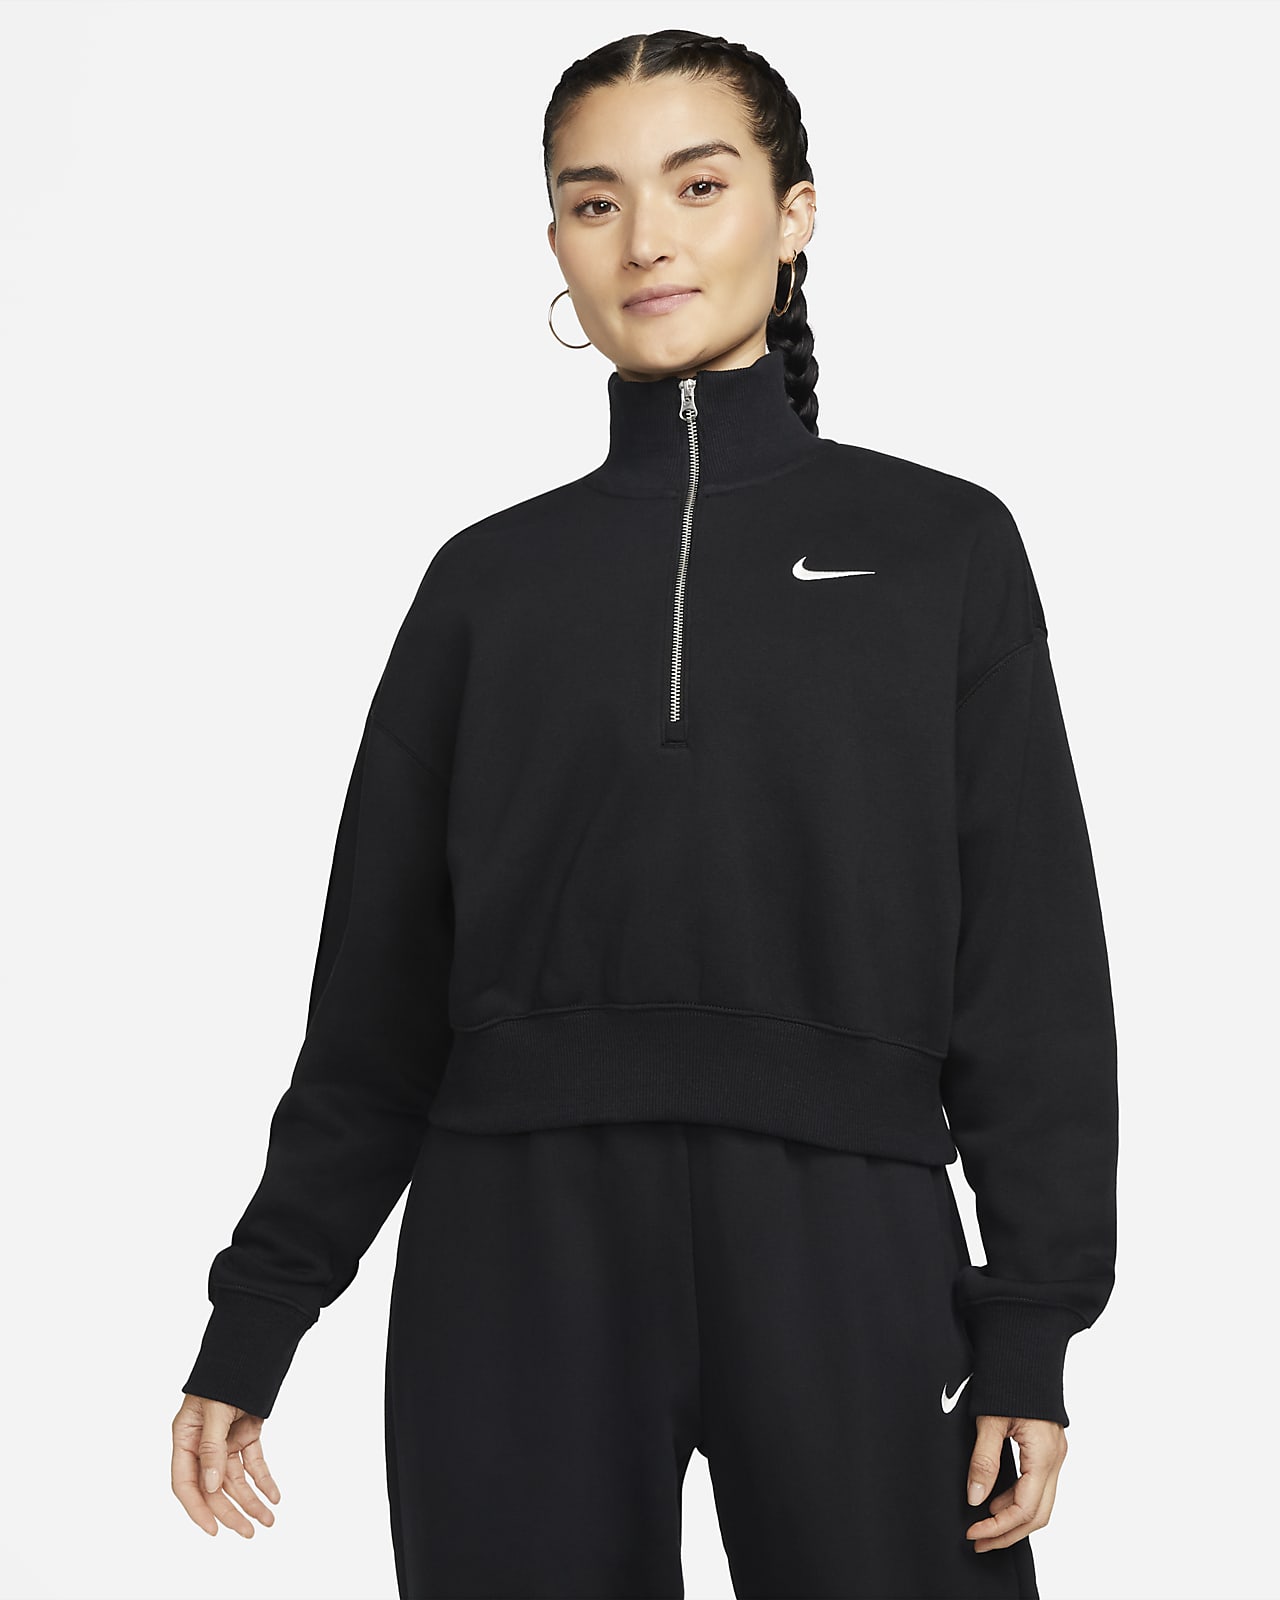 Γυναικείο φούτερ crop με φερμουάρ στο μισό μήκος Nike Sportswear Phoenix Fleece